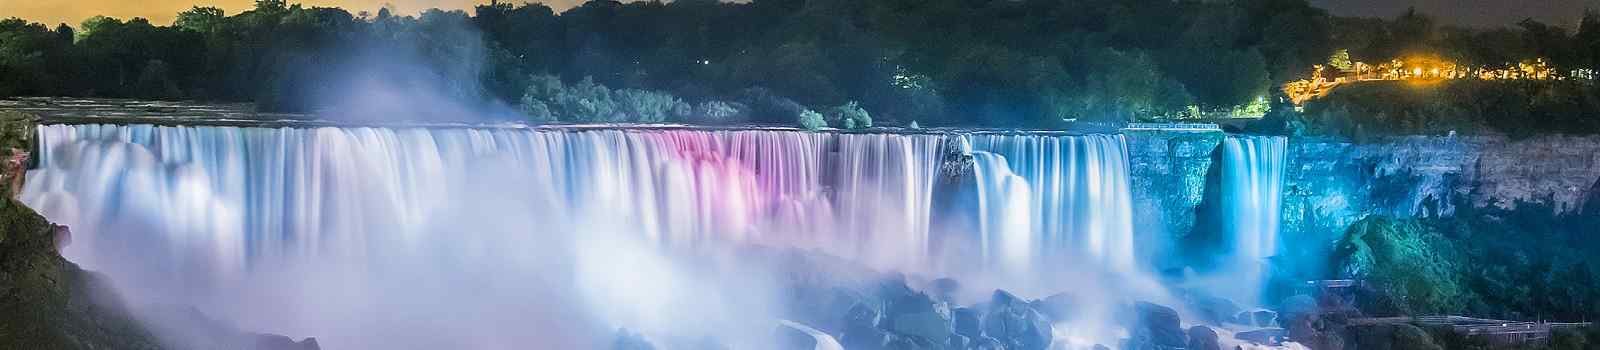 JUWELEN-NORDOST  Juwelen des Nordostens Niagarafaelle farbenfroh beleuchtet in der Nacht